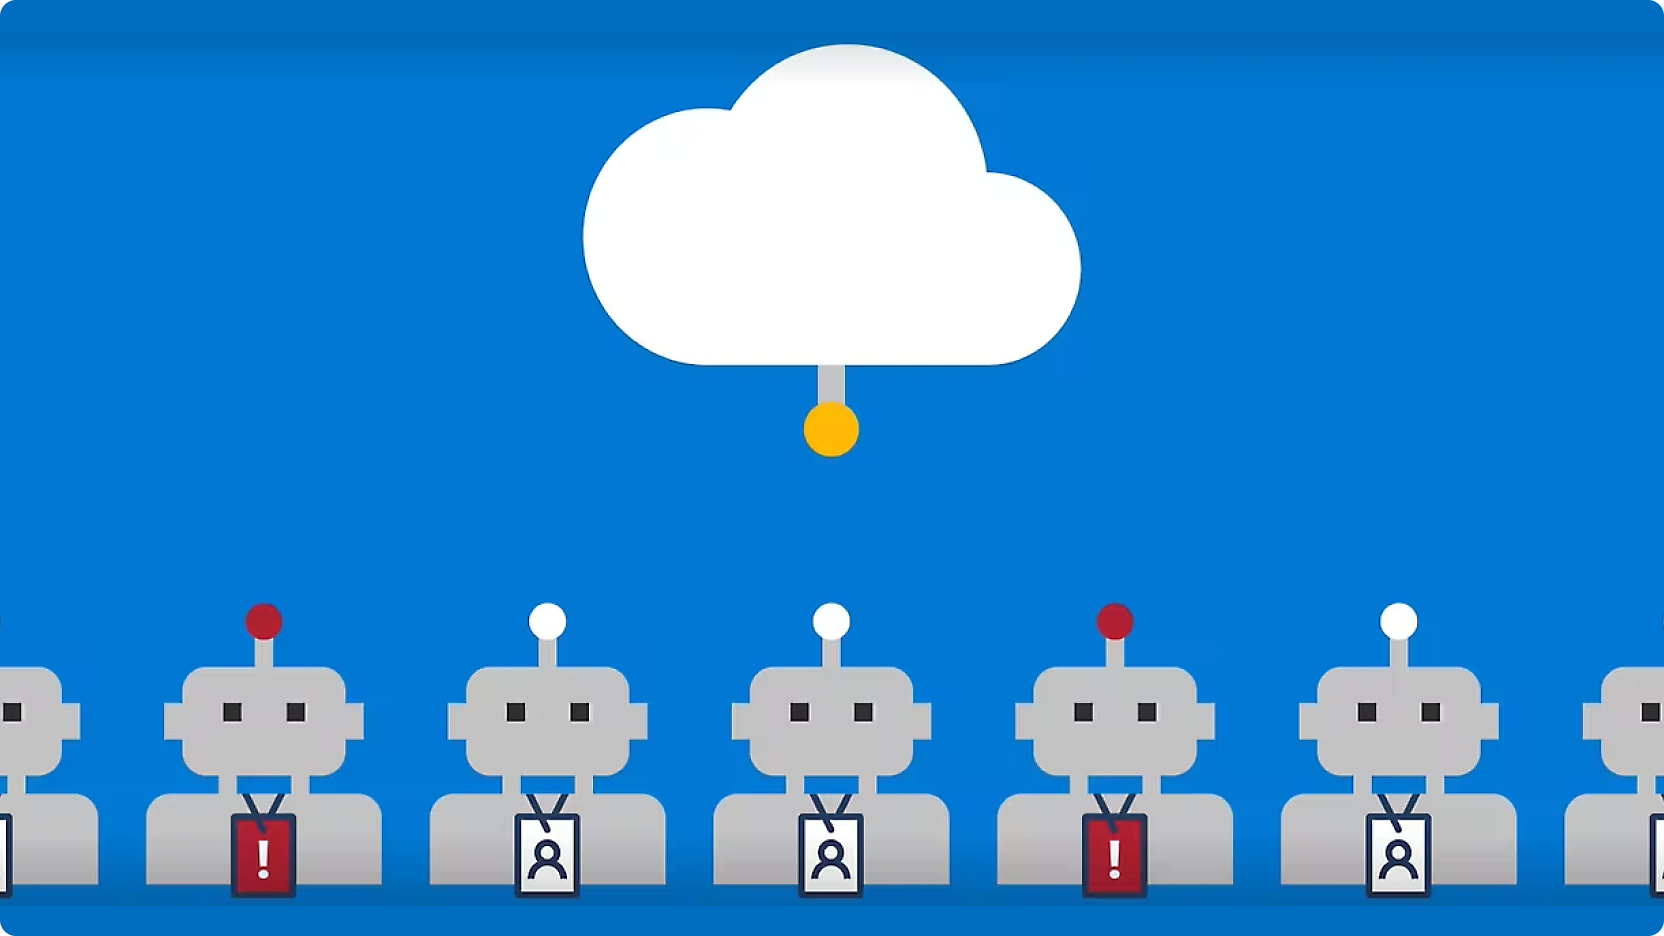 图形描绘了一排排头顶红色按钮的机器人，机器人通过线条与中央的云连接在一起